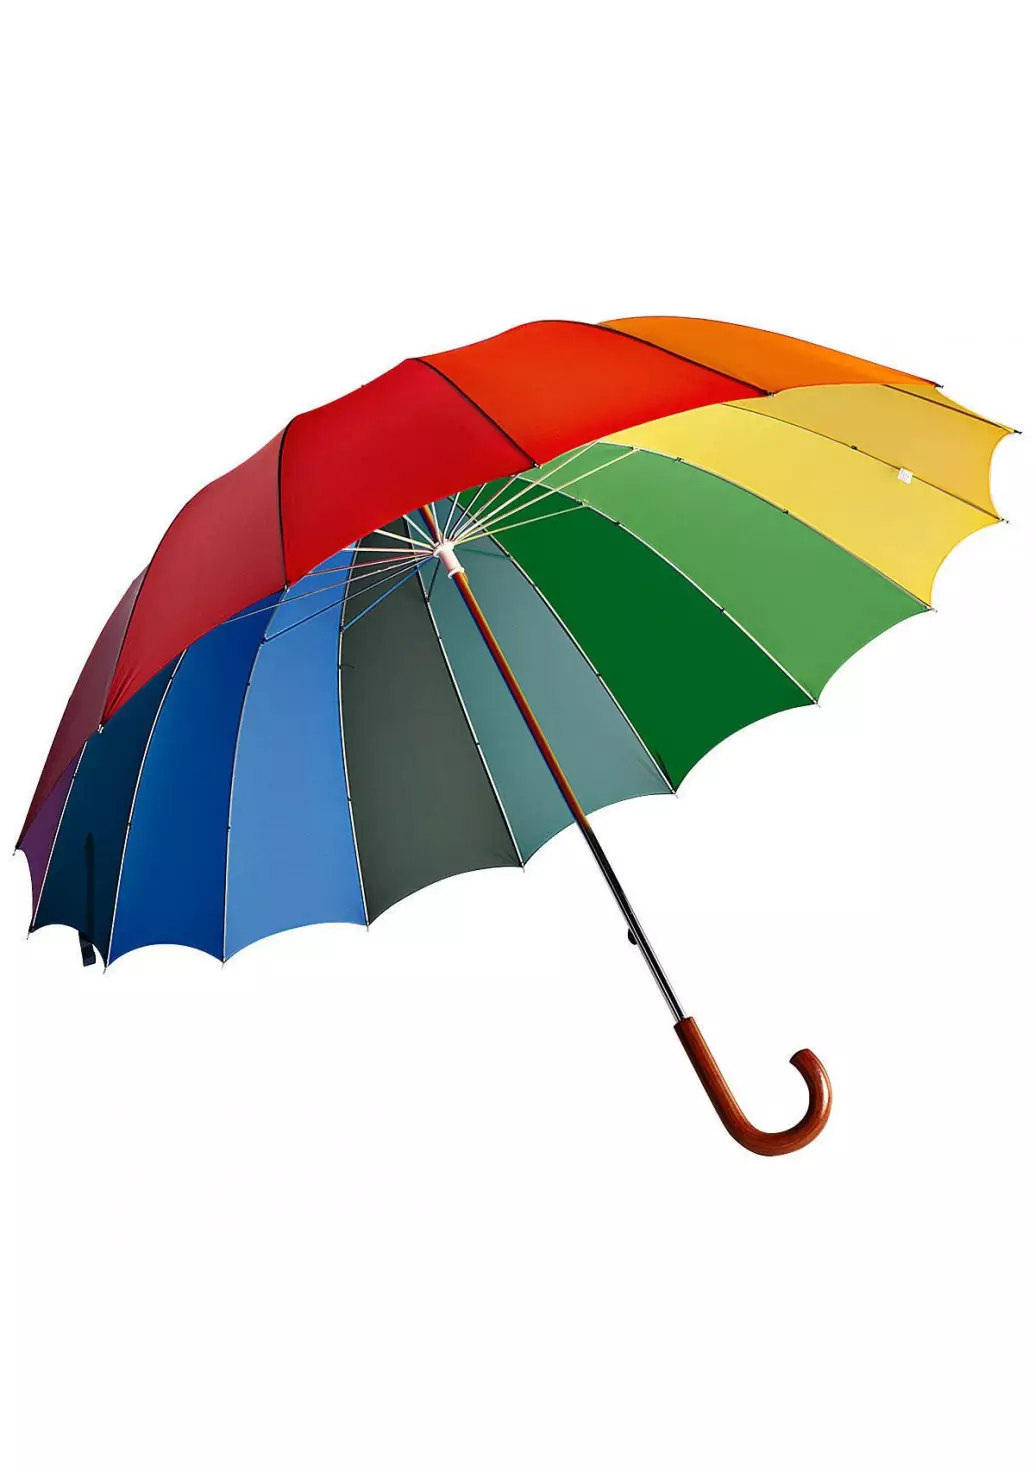 Umbrelli arcobaleno (50 foto): canna multicolore e ombrelli pieghevoli a colori che cambiano arcobaleno-arcobaleno 15239_2